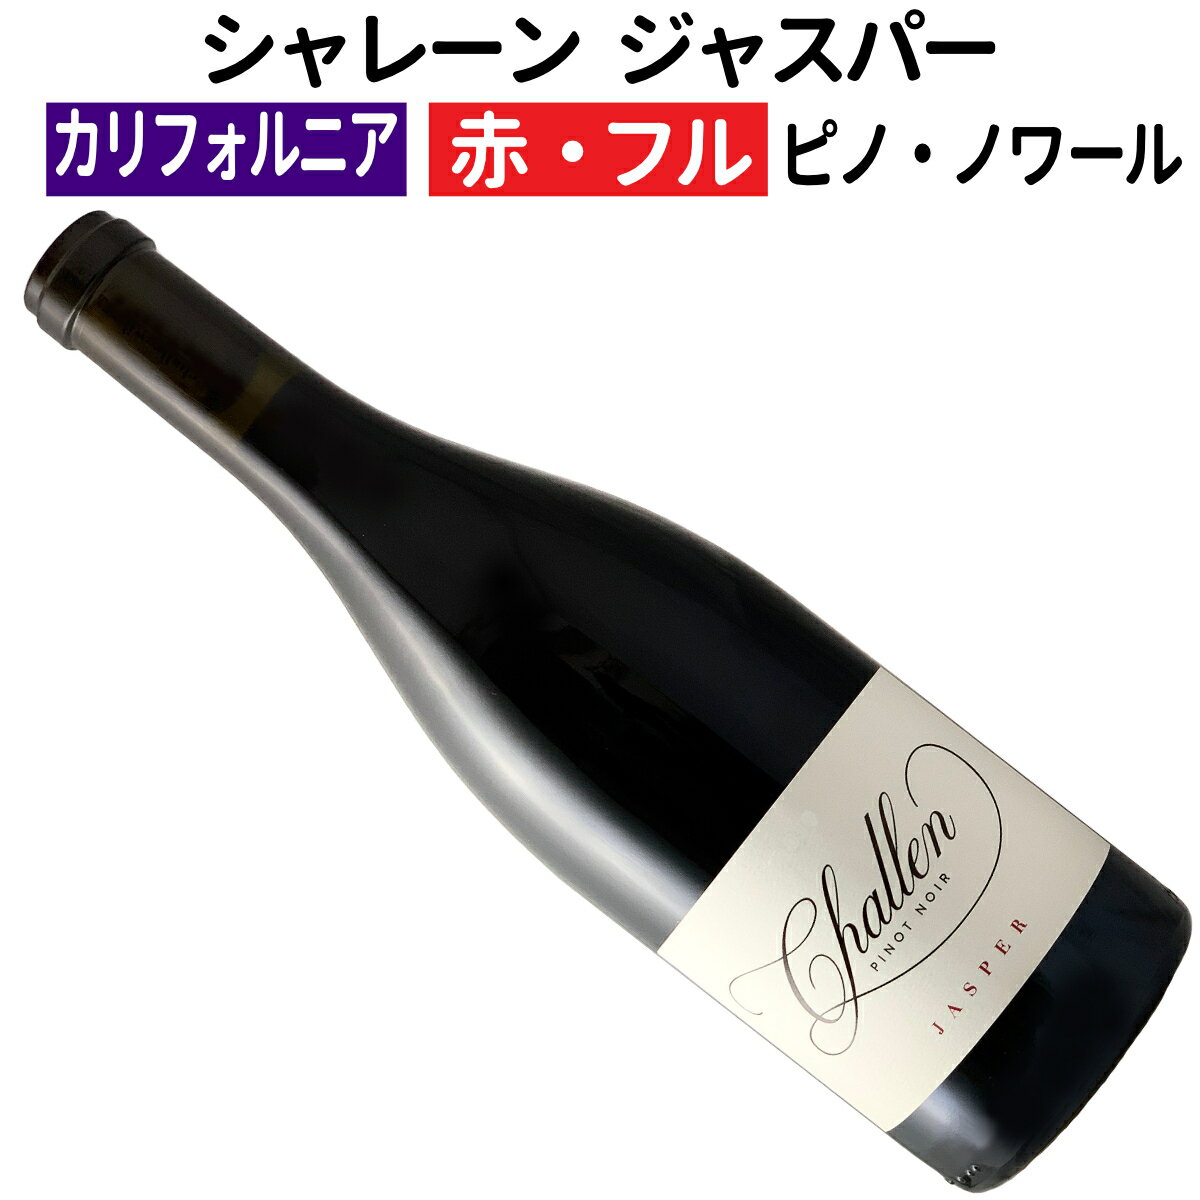 【アメリカワイン】【赤ワイン】シャレーン ジャスパー サンタ・リタ・ヒルズピノ・ノワール 2021［フルボディー］